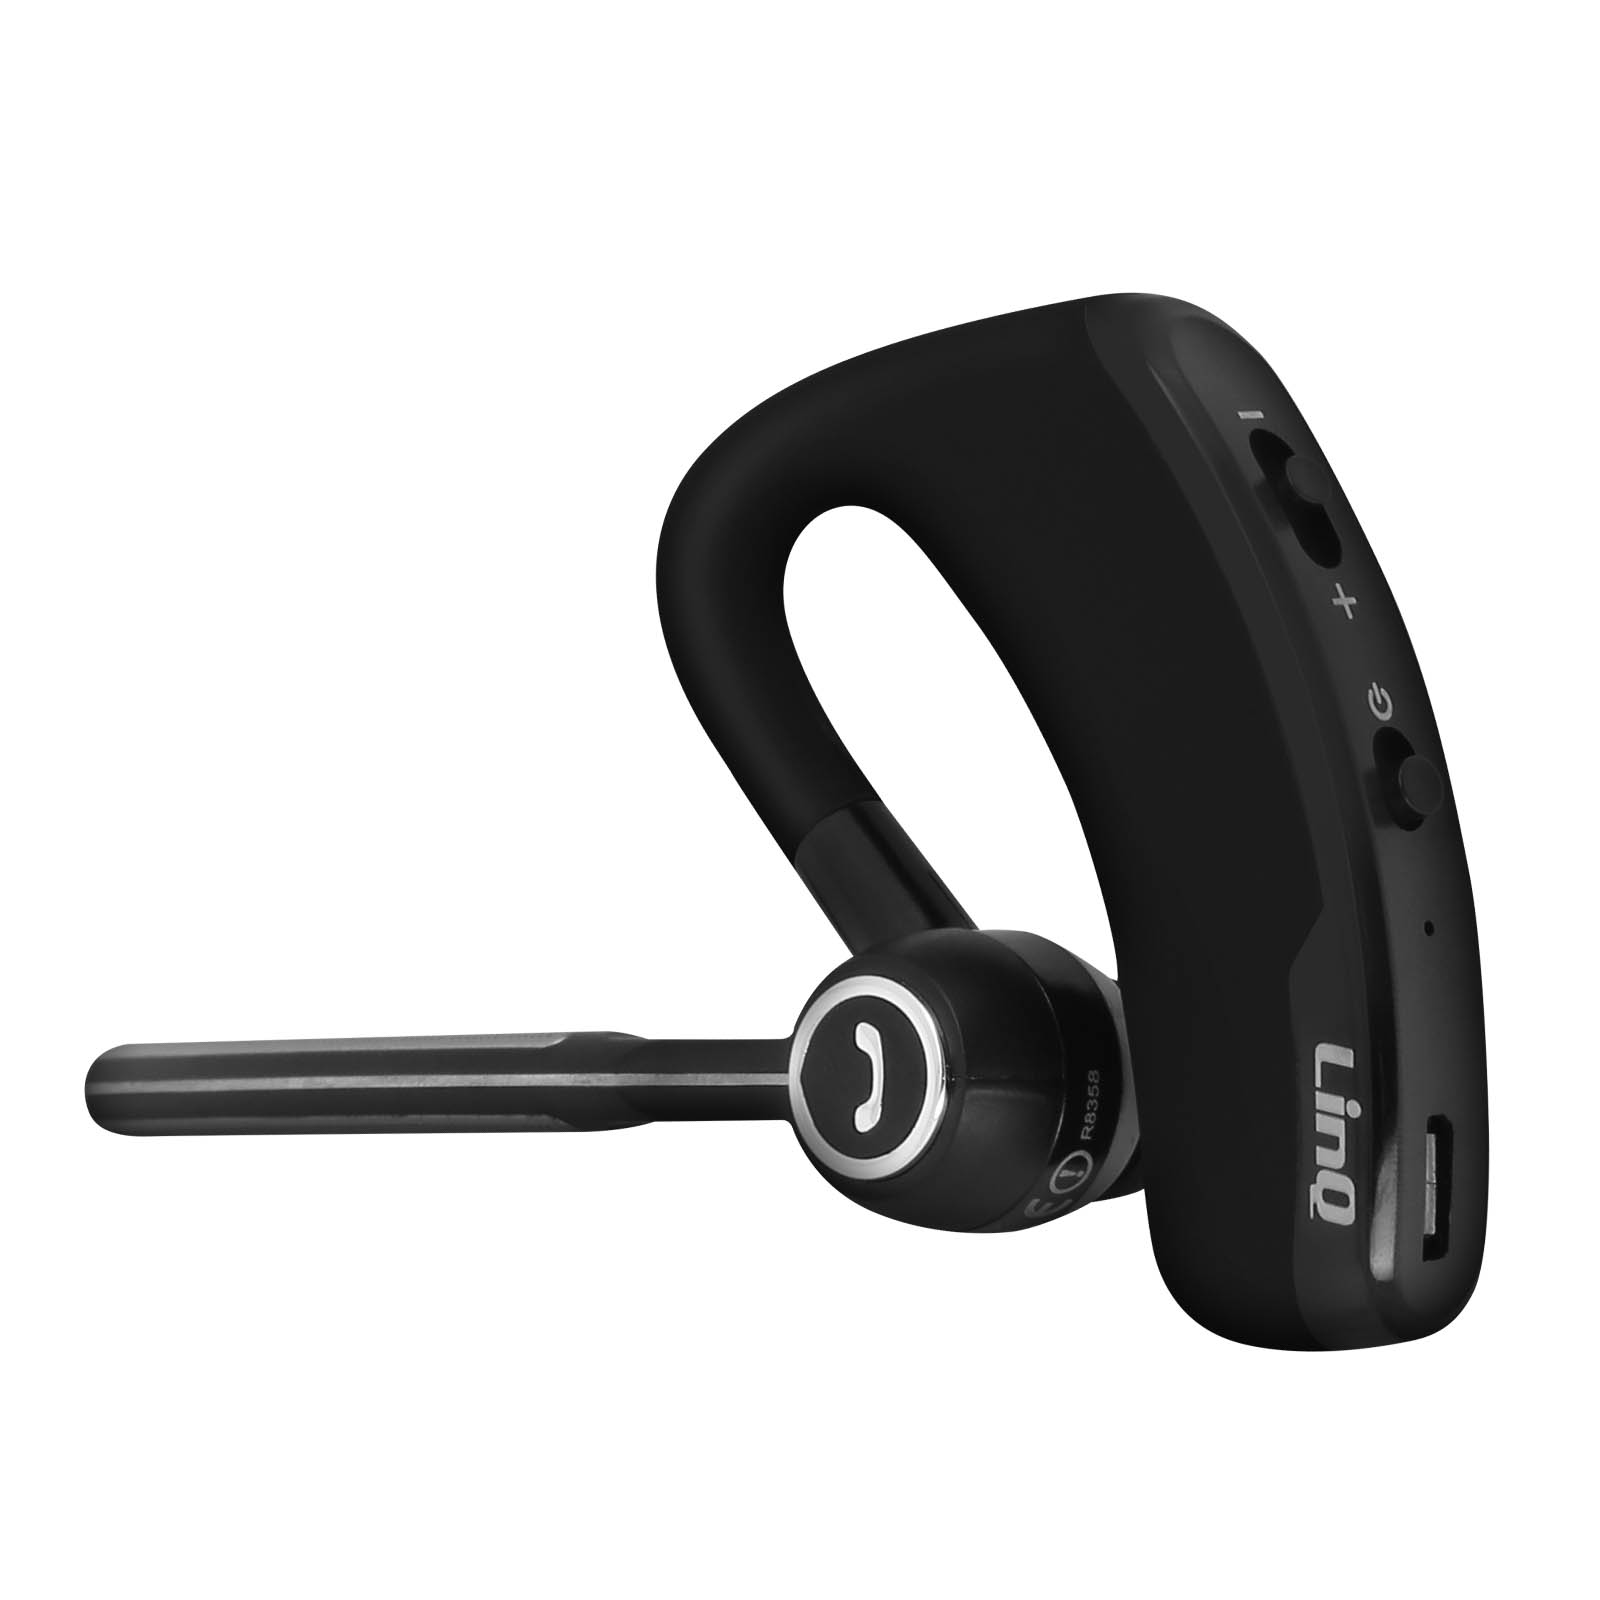 Oreillette Bluetooth Sans-fil avec Contour d'oreille, LinQ R8358